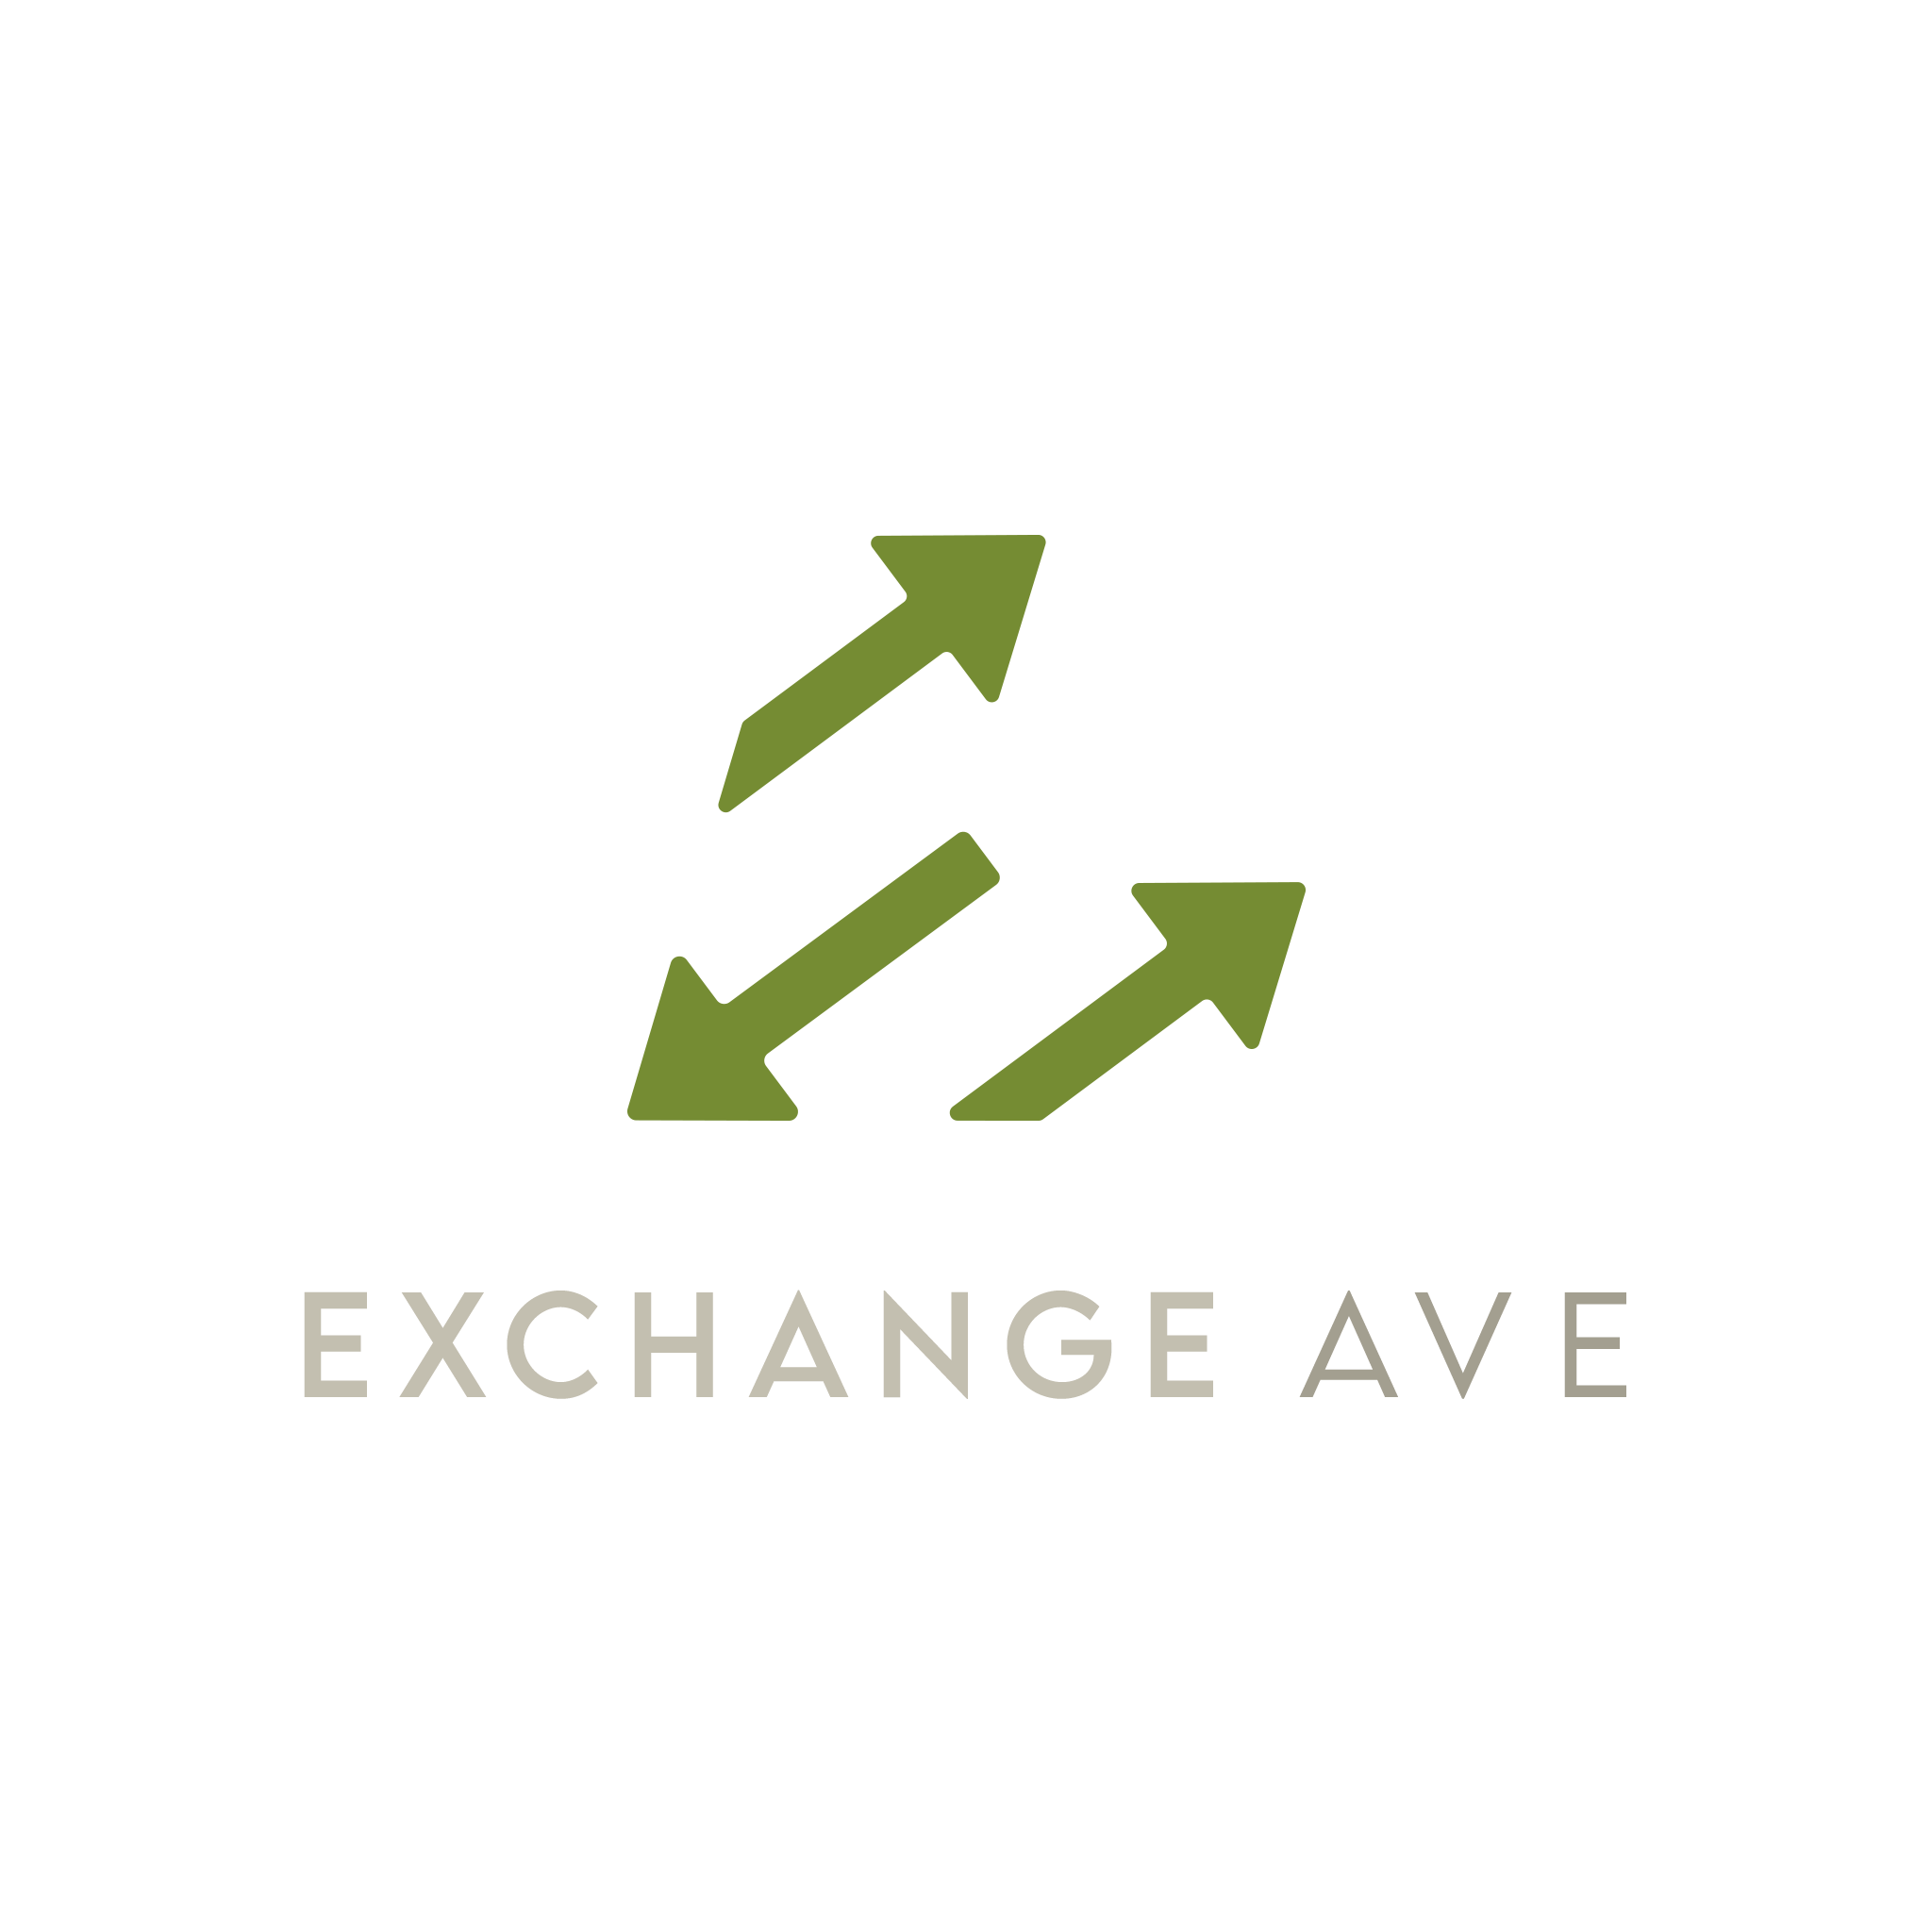 Exchange Ave